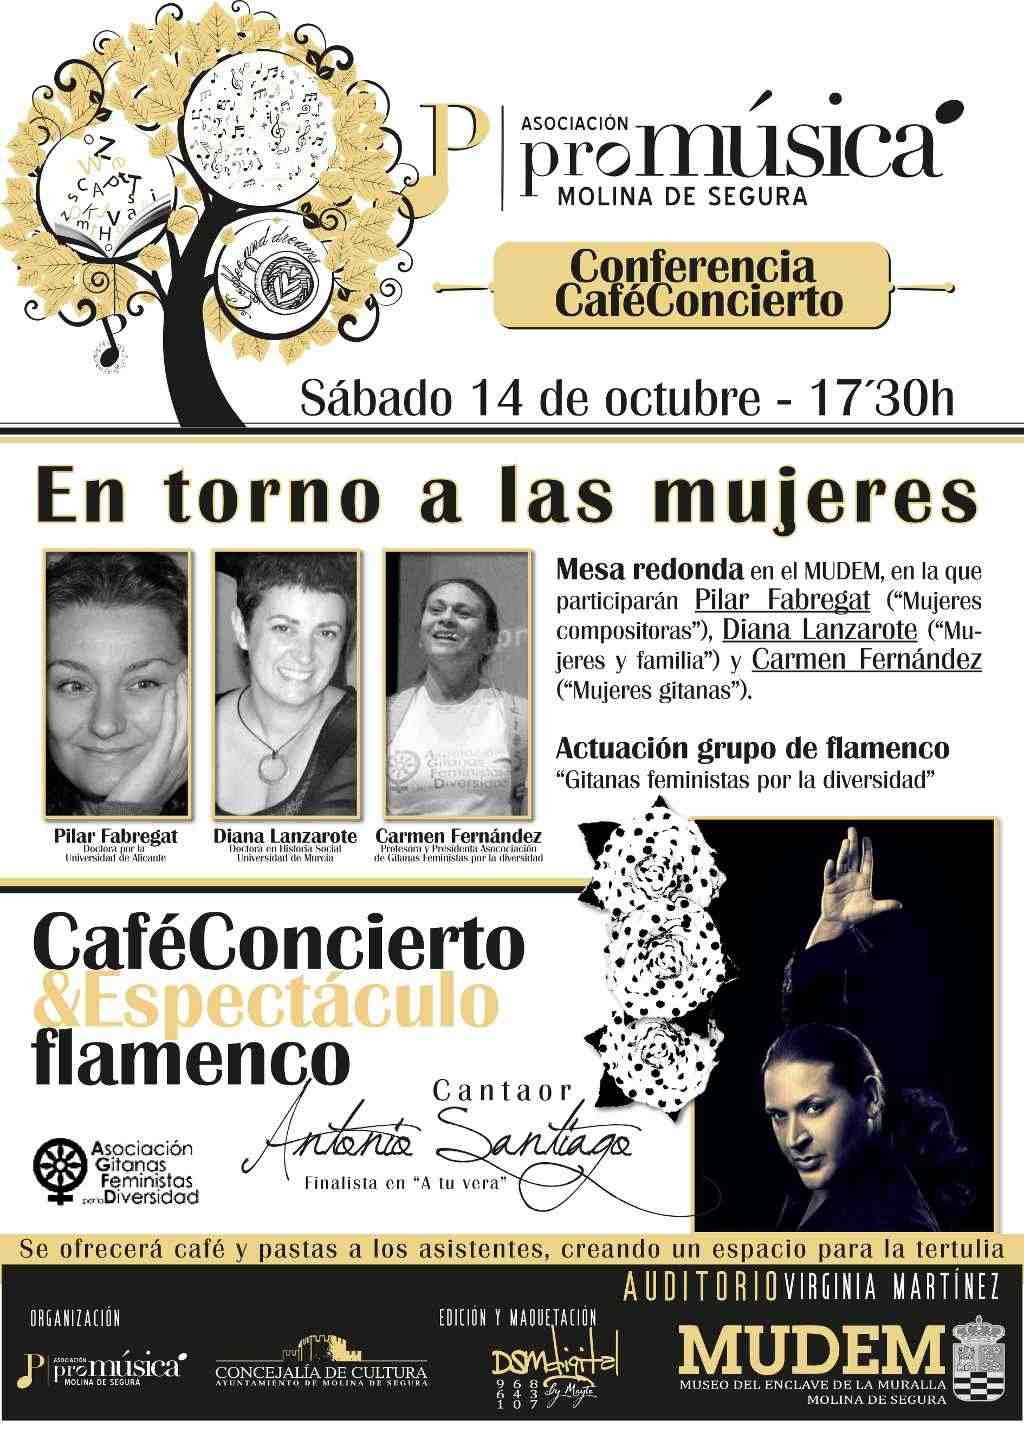 Ciclo 22Estaciones Sonoras22 en Molina de Segura-en torno a las mujeres  - 14 octubre.jpg